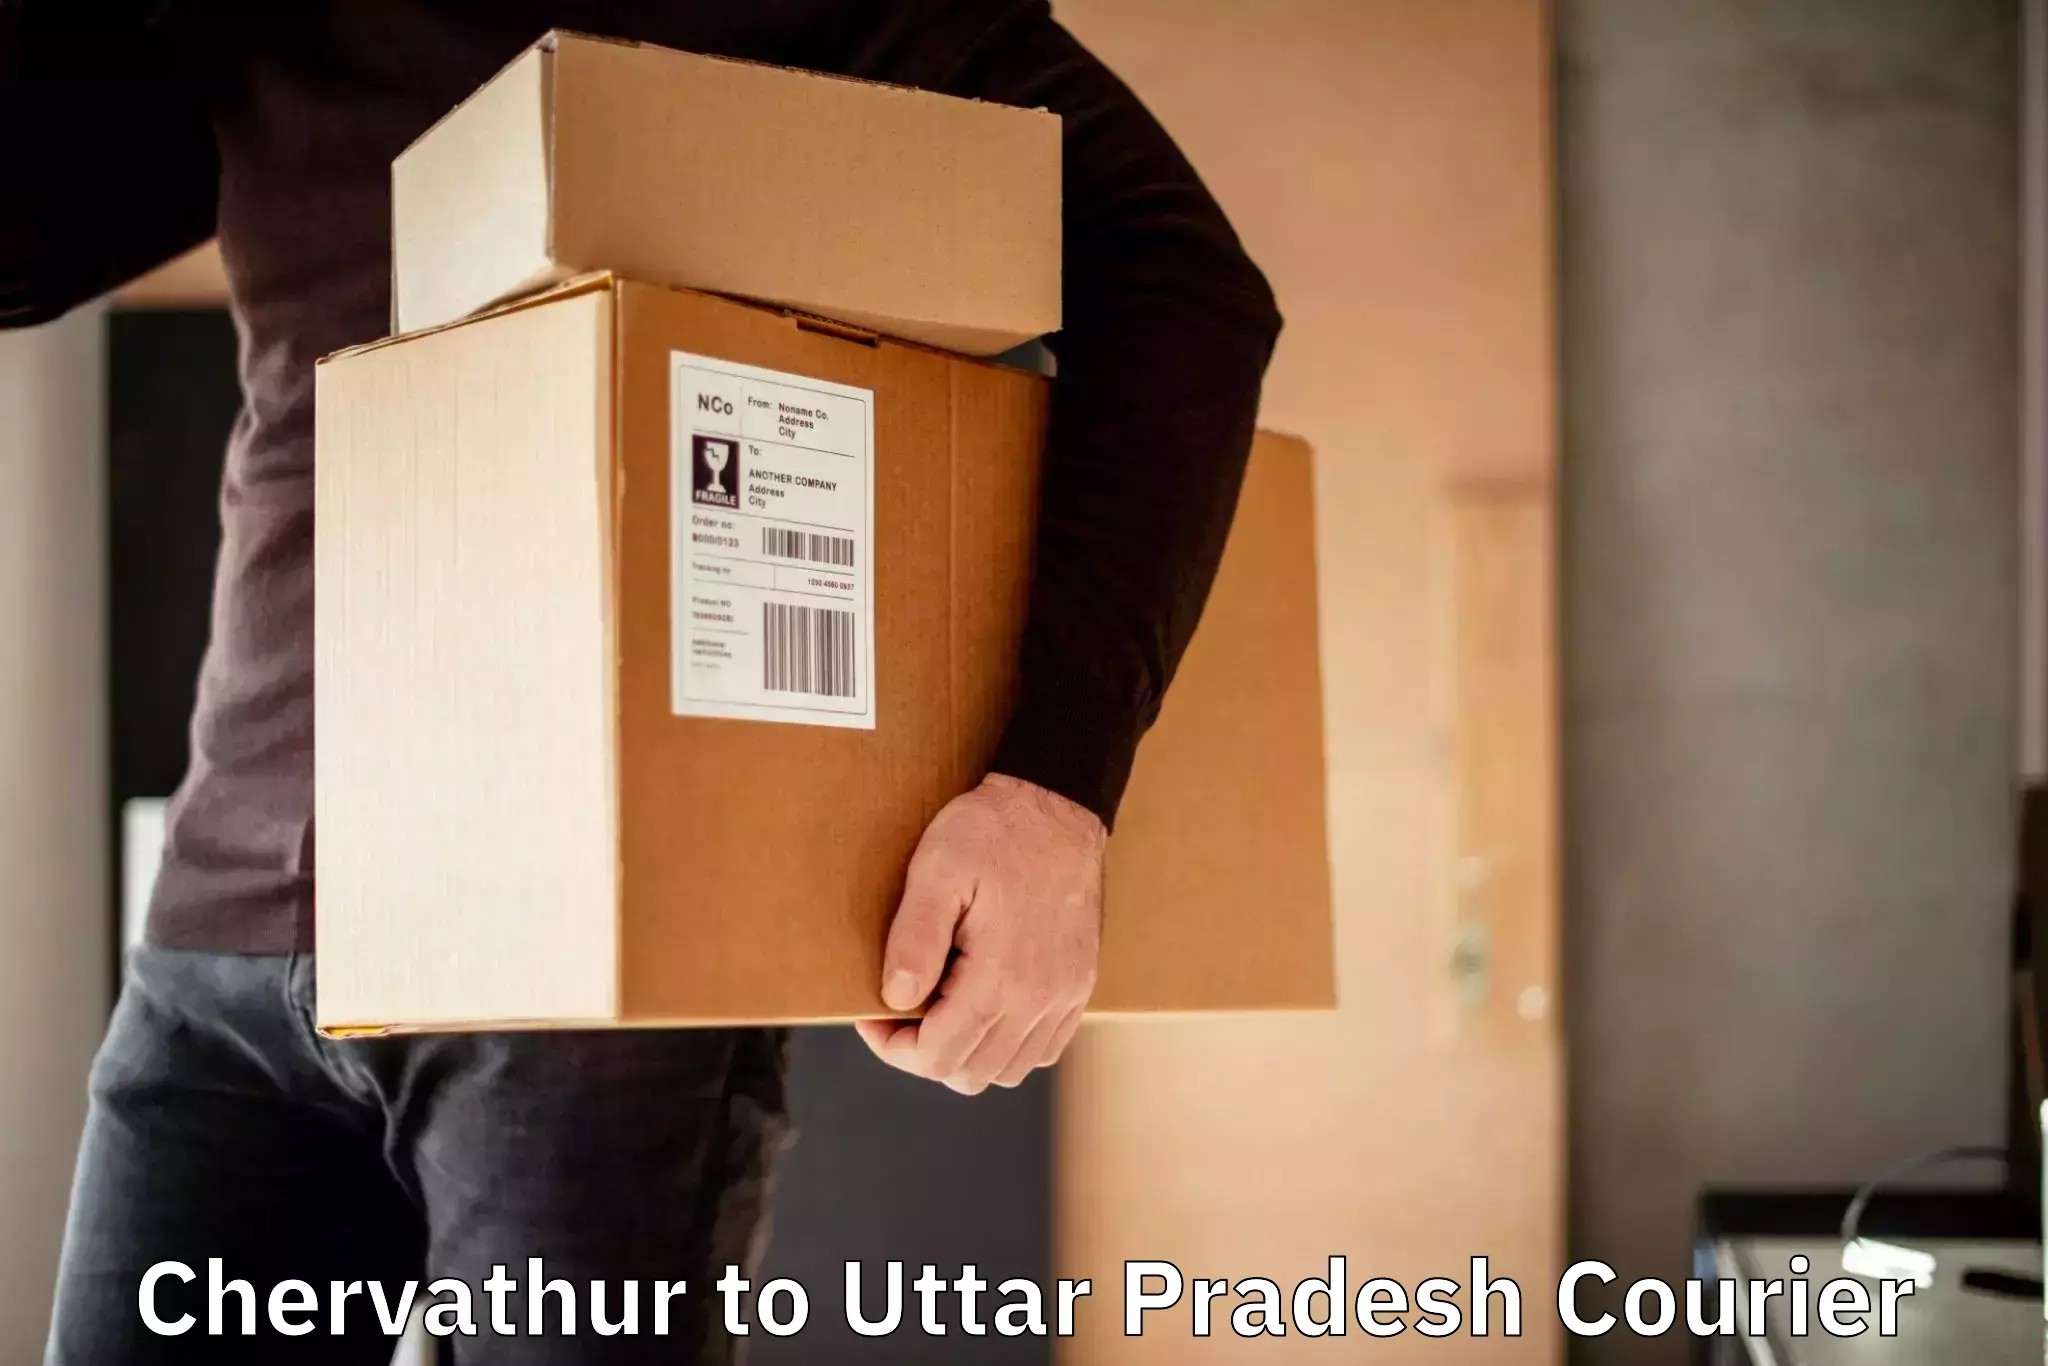 Cargo courier service Chervathur to Bareilly